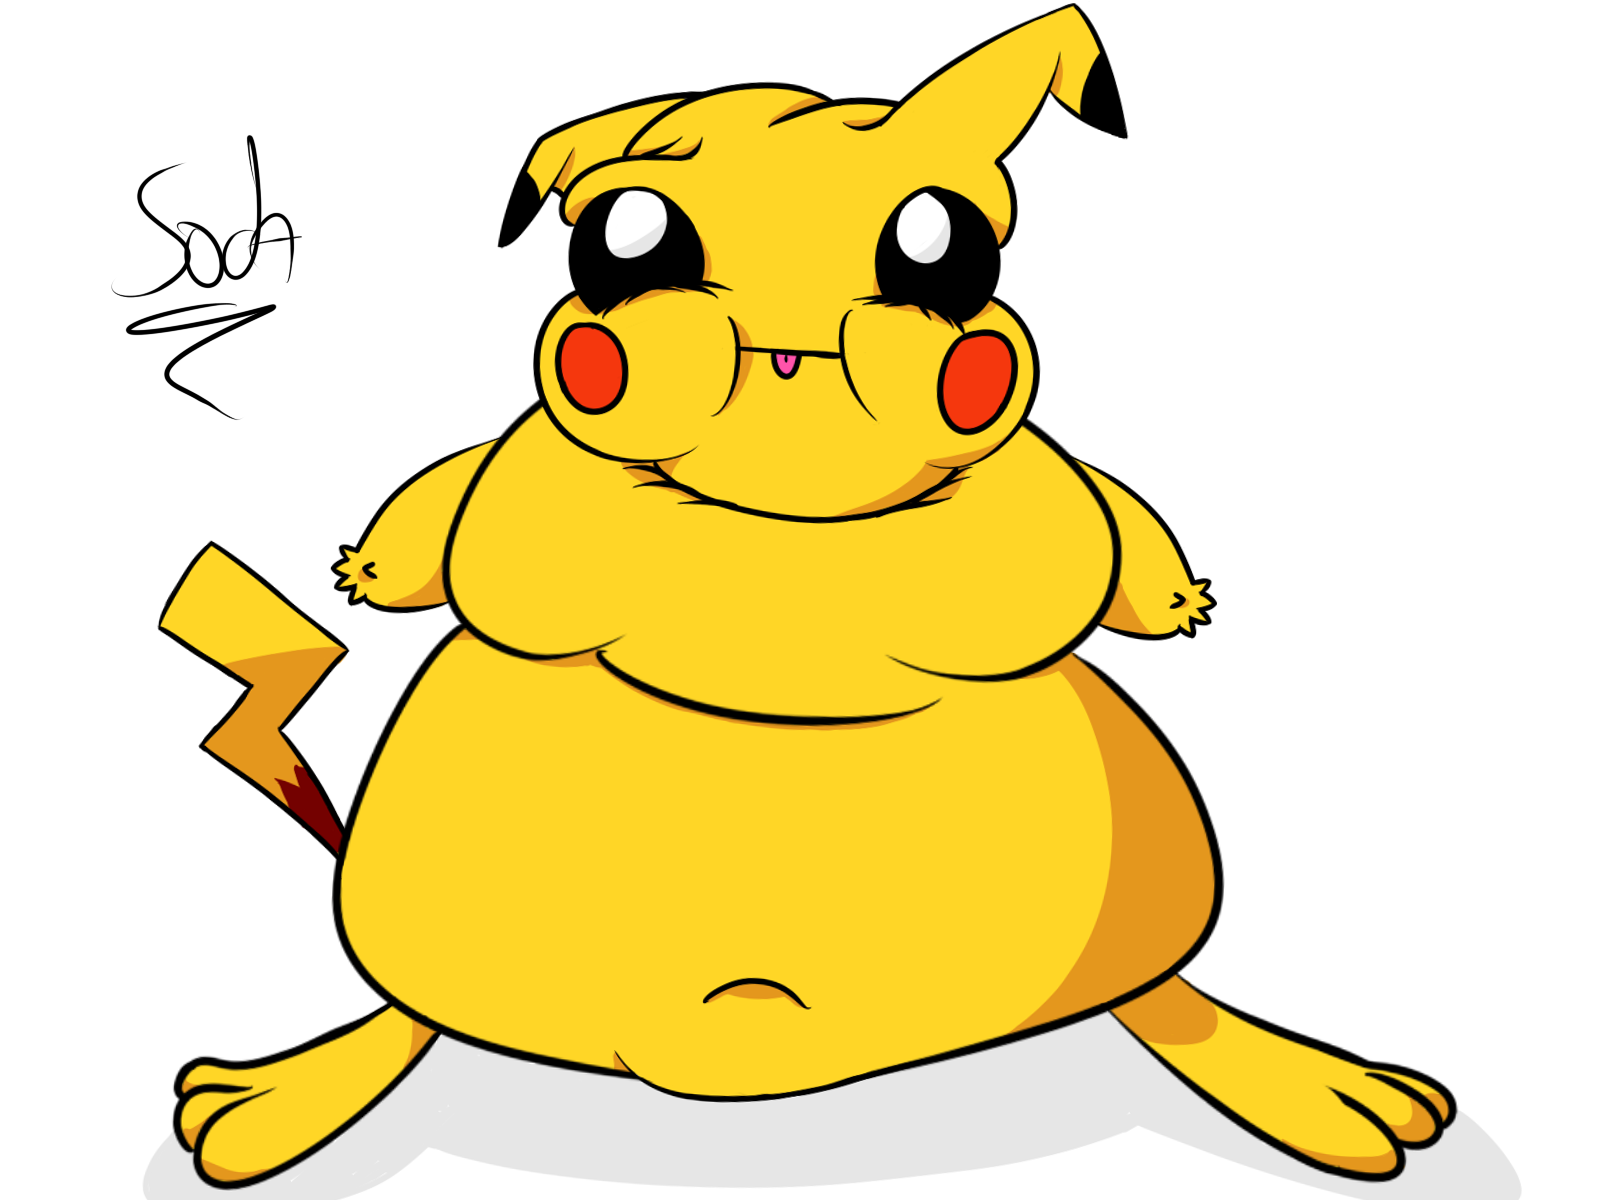 Fat Pikachu by SodaFueled on Newgrounds.